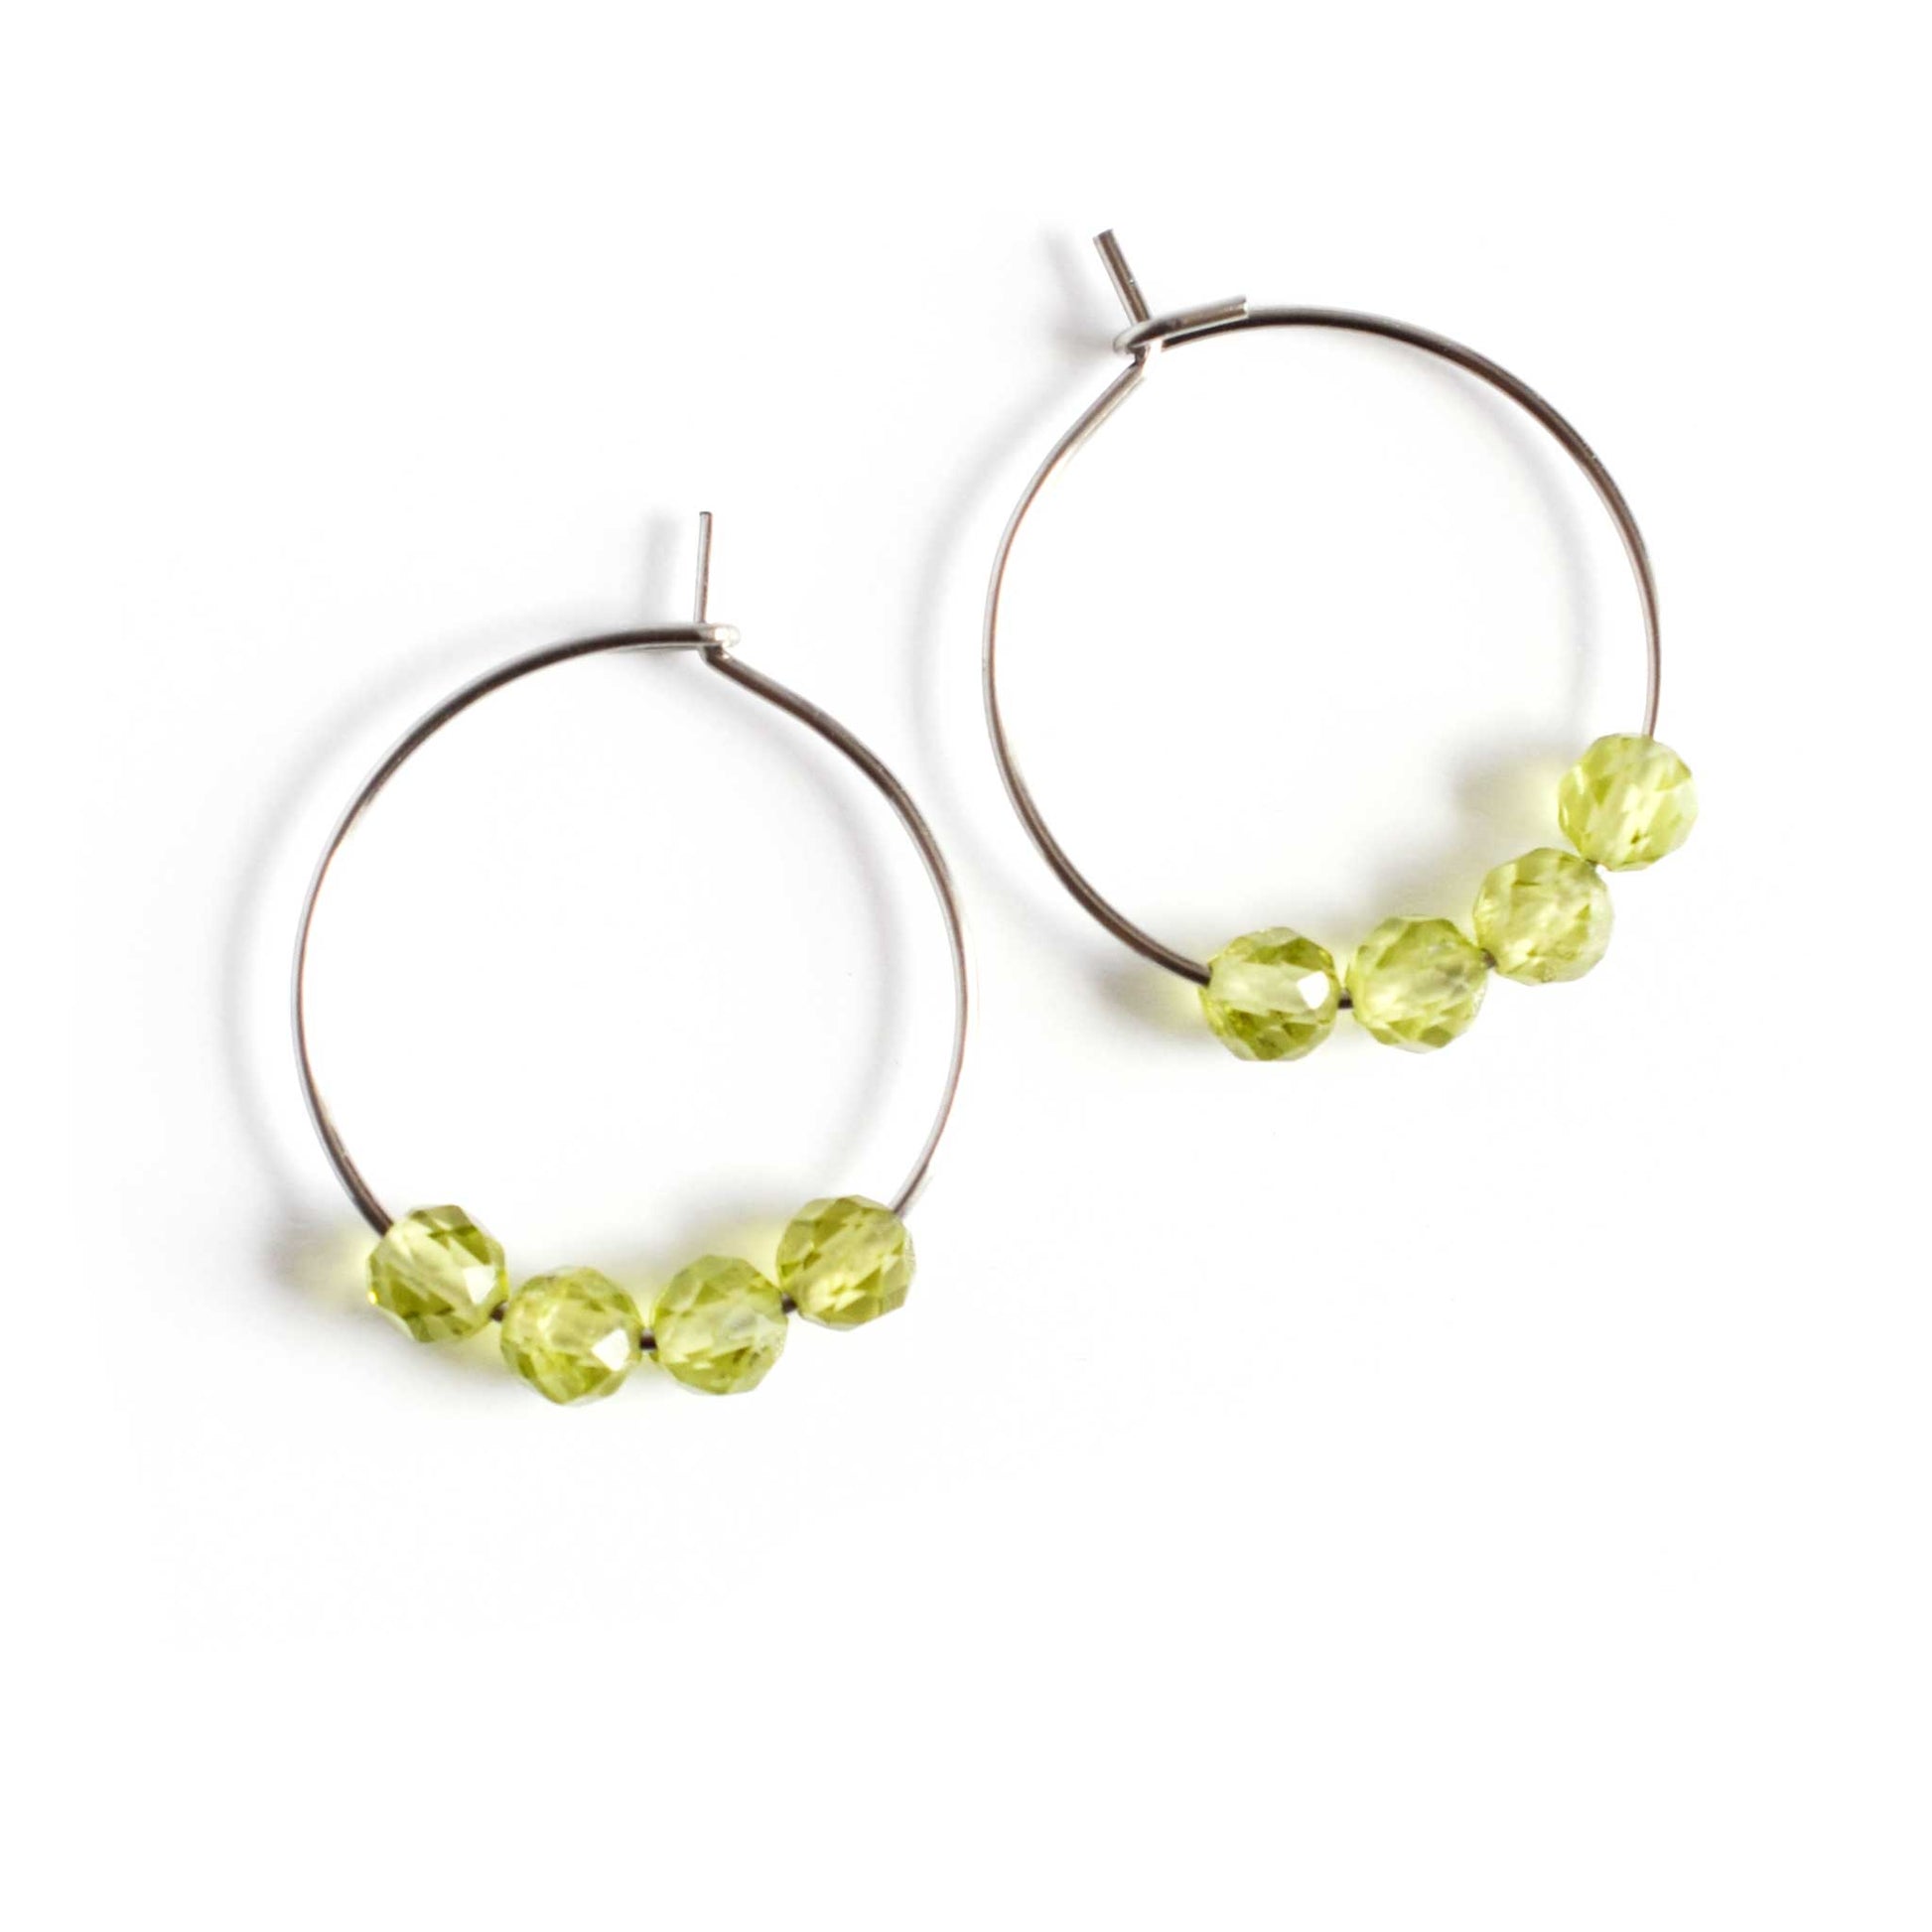 Pair of green Peridot gemstone hoop earrings on white background